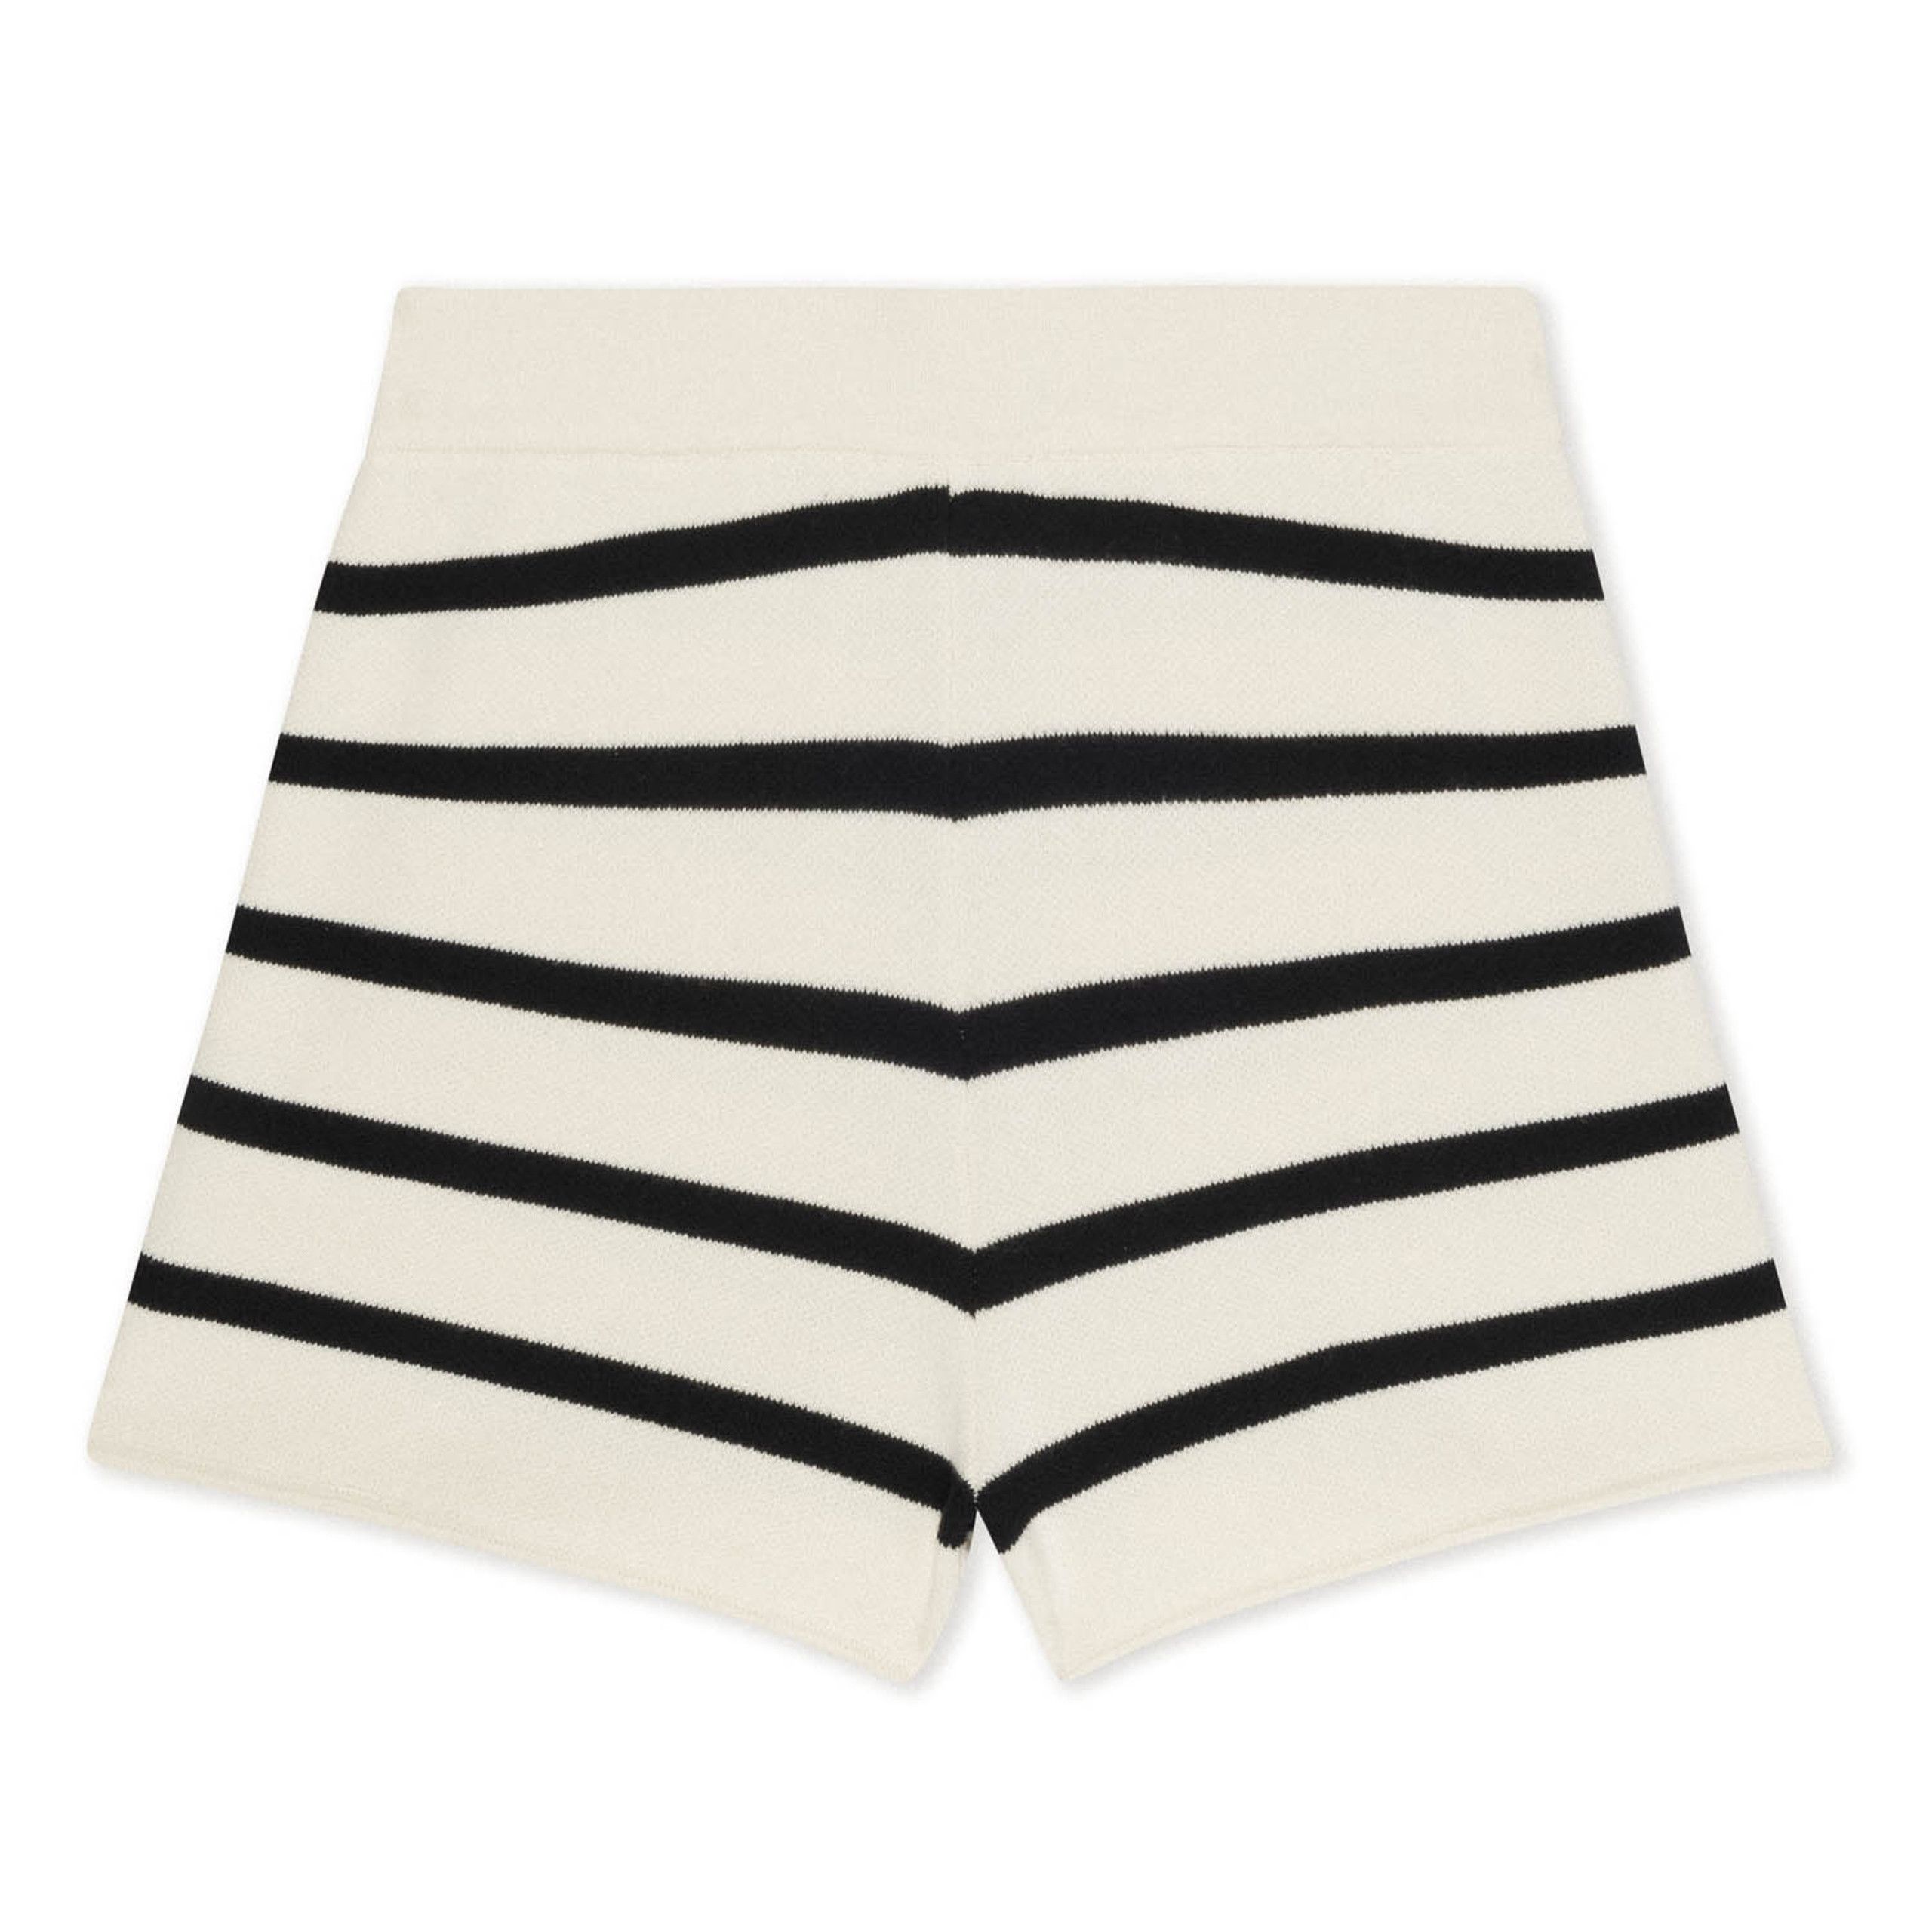 Black Striped Knit Shorts | EllandEmm